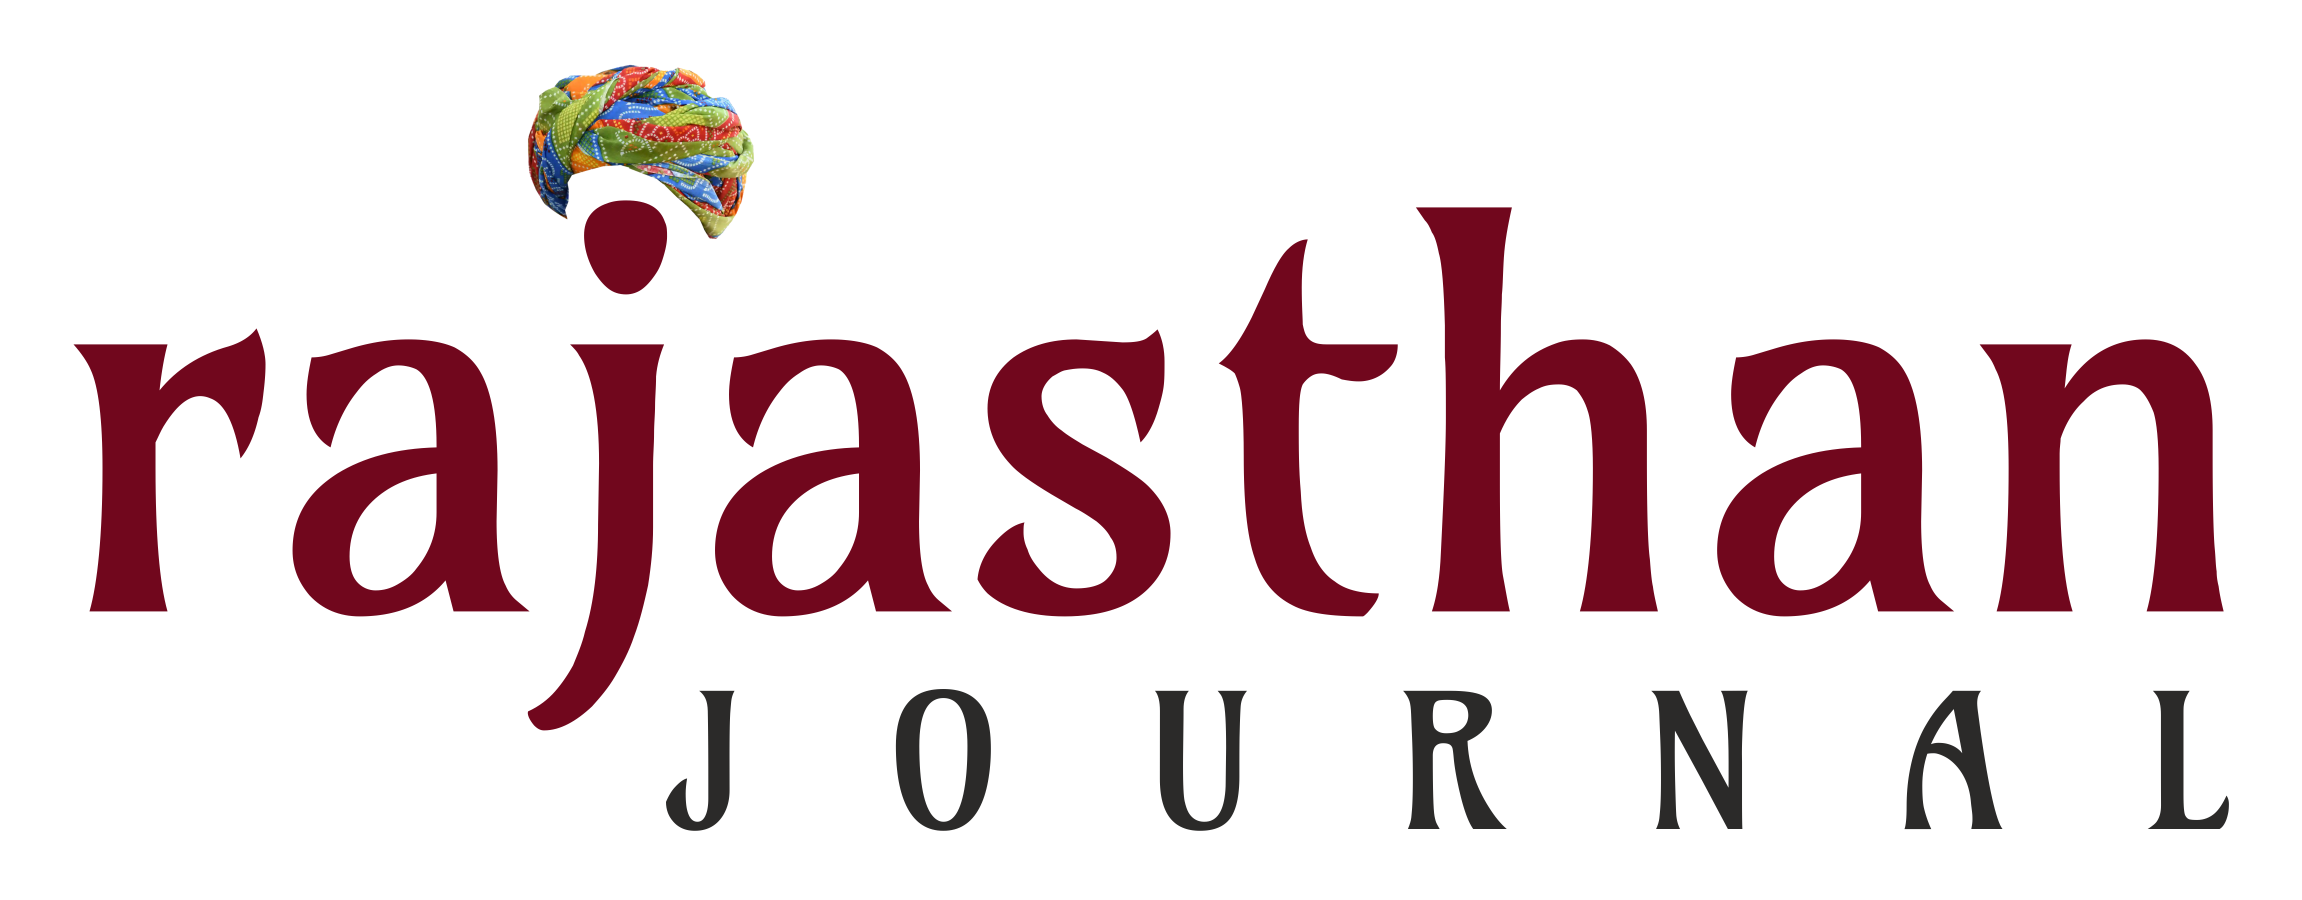 Rajasthan Journal